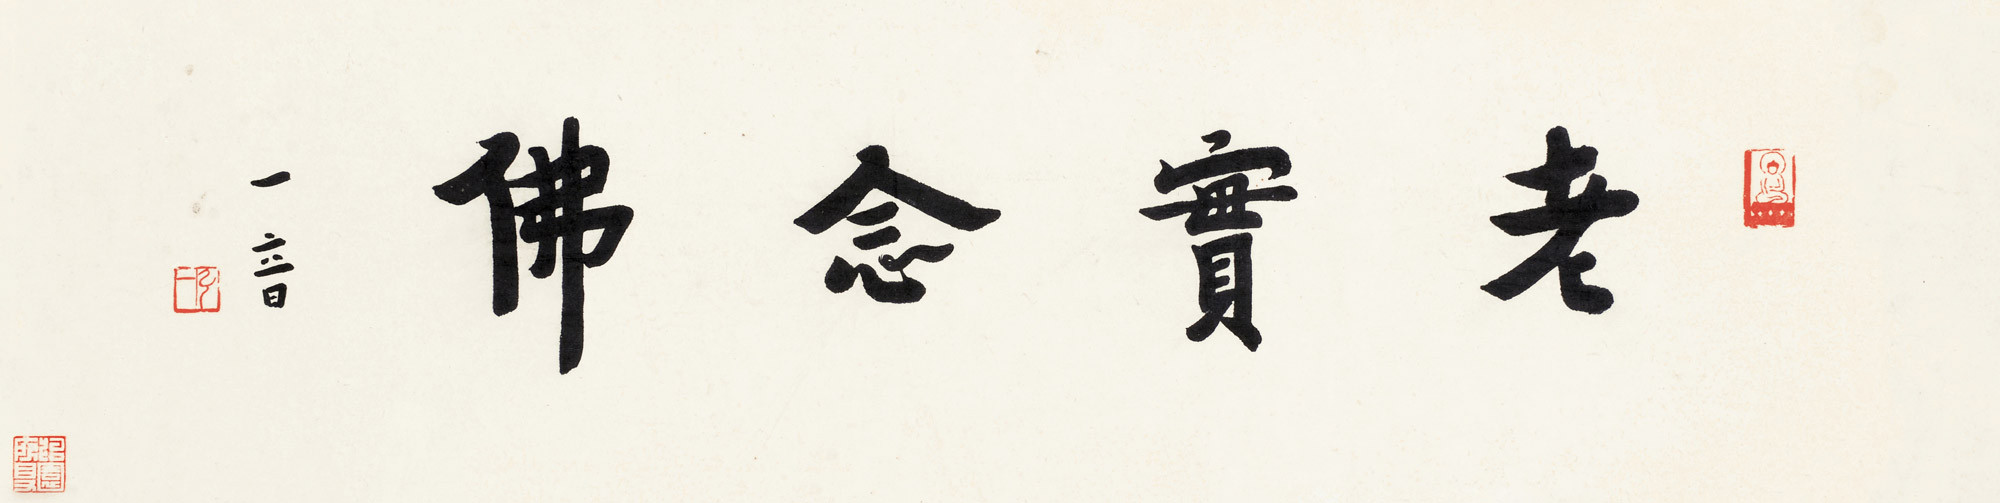 Calligraphy in Regular Script